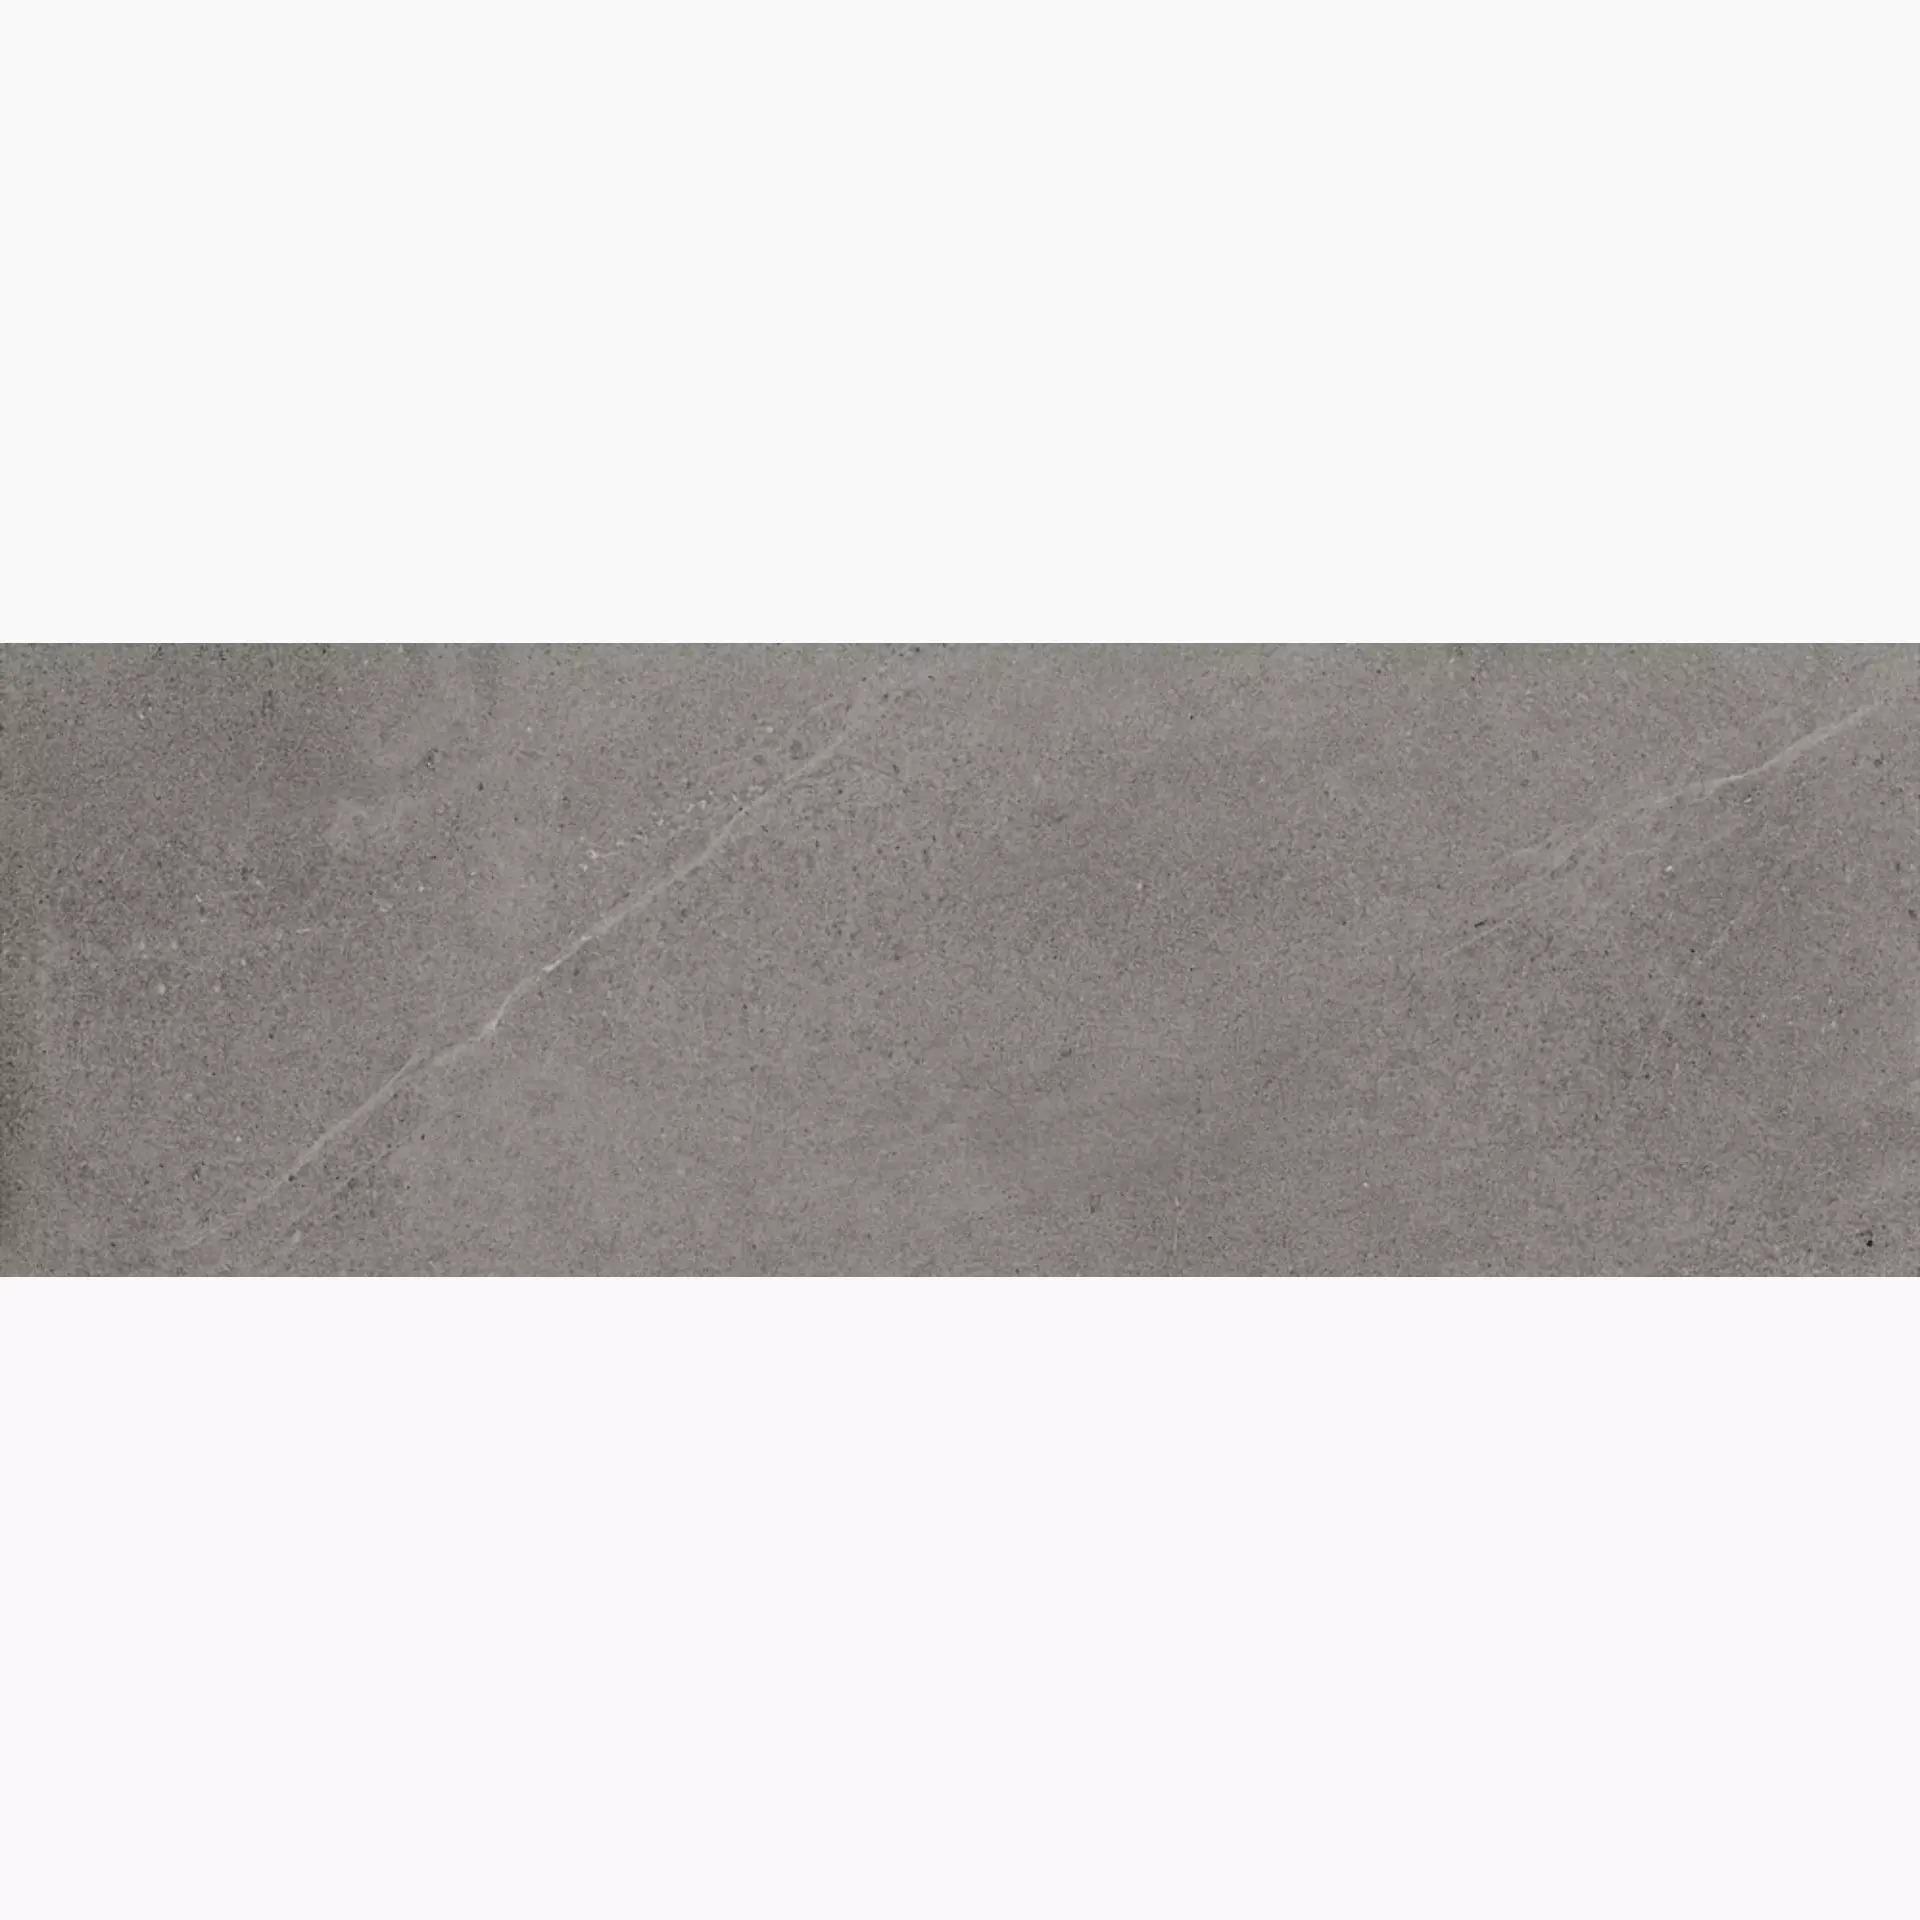 Cottodeste Kerlite Limestone Slate Naturale Protect EK7LS30 100x300cm rectified 5,5mm